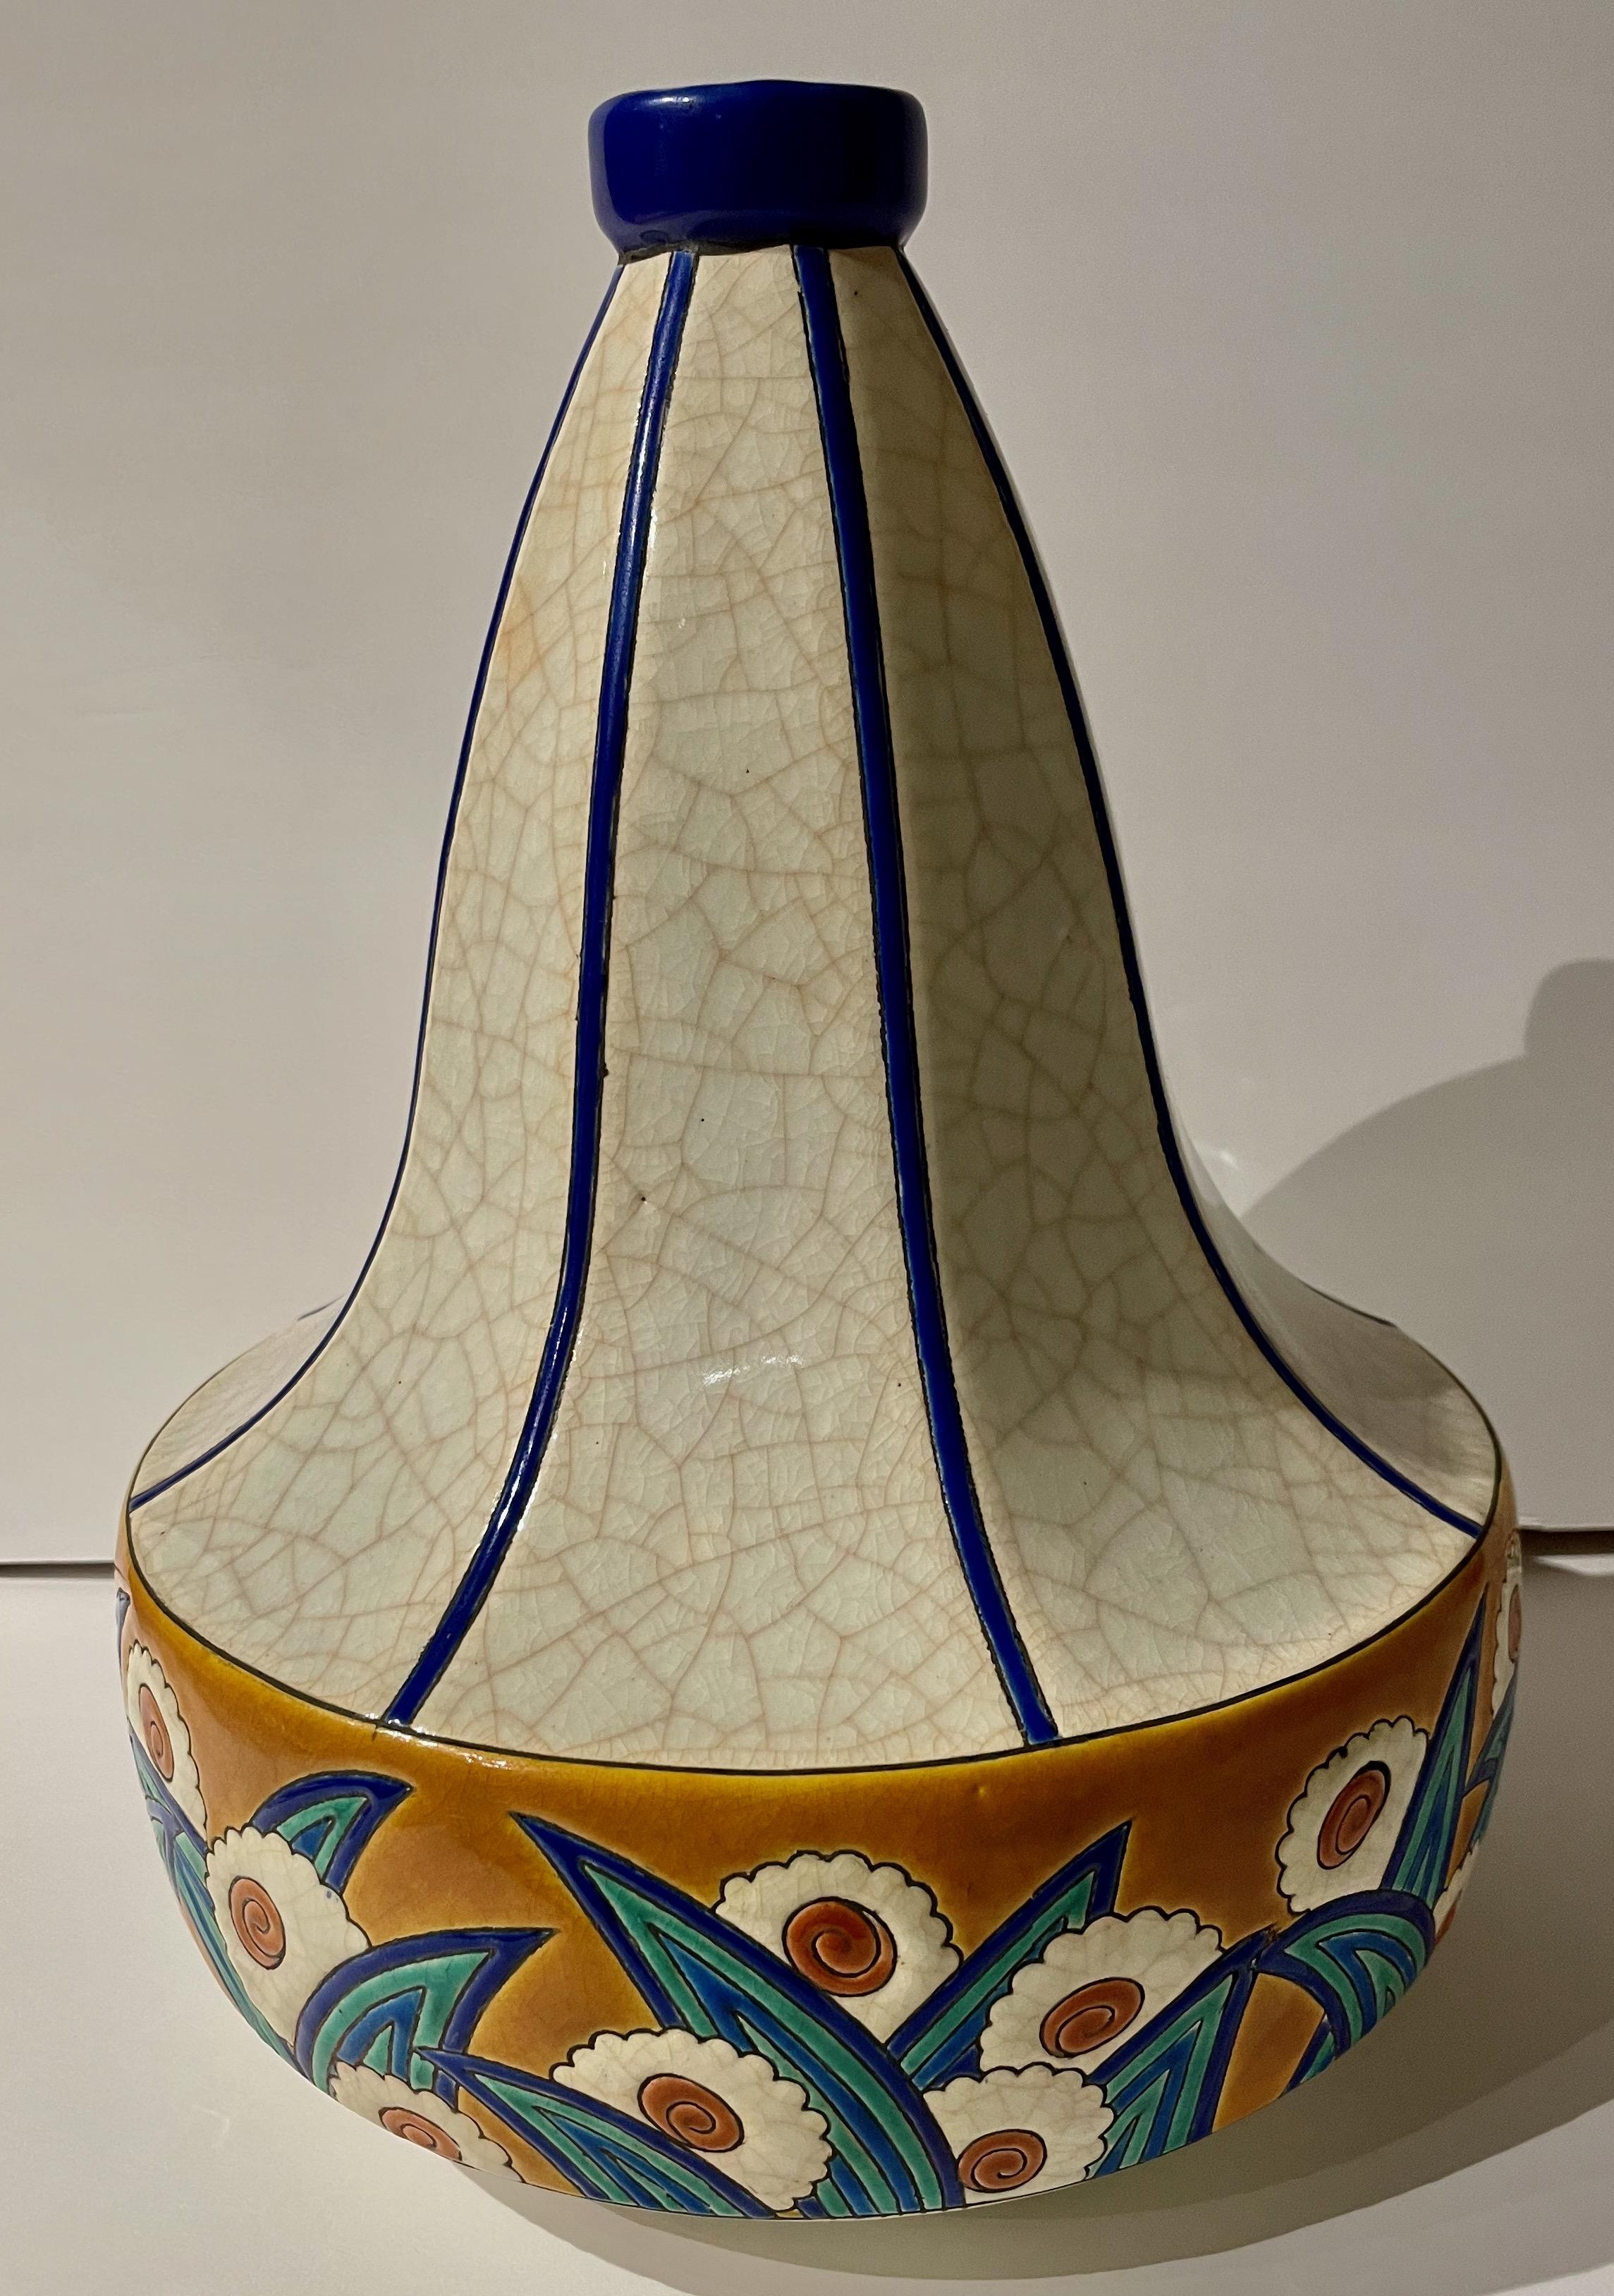 Longwy Art Deco Französisch Cloisonné Keramik Geometrische Kürbis Form, große Vase, helle Farbe mit atemberaubenden Blautönen, klassische Kürbisform. Wiederholte Blumen- und Blattmuster in leuchtenden Farben, Blautönen und Craquelé-Creme ergeben ein